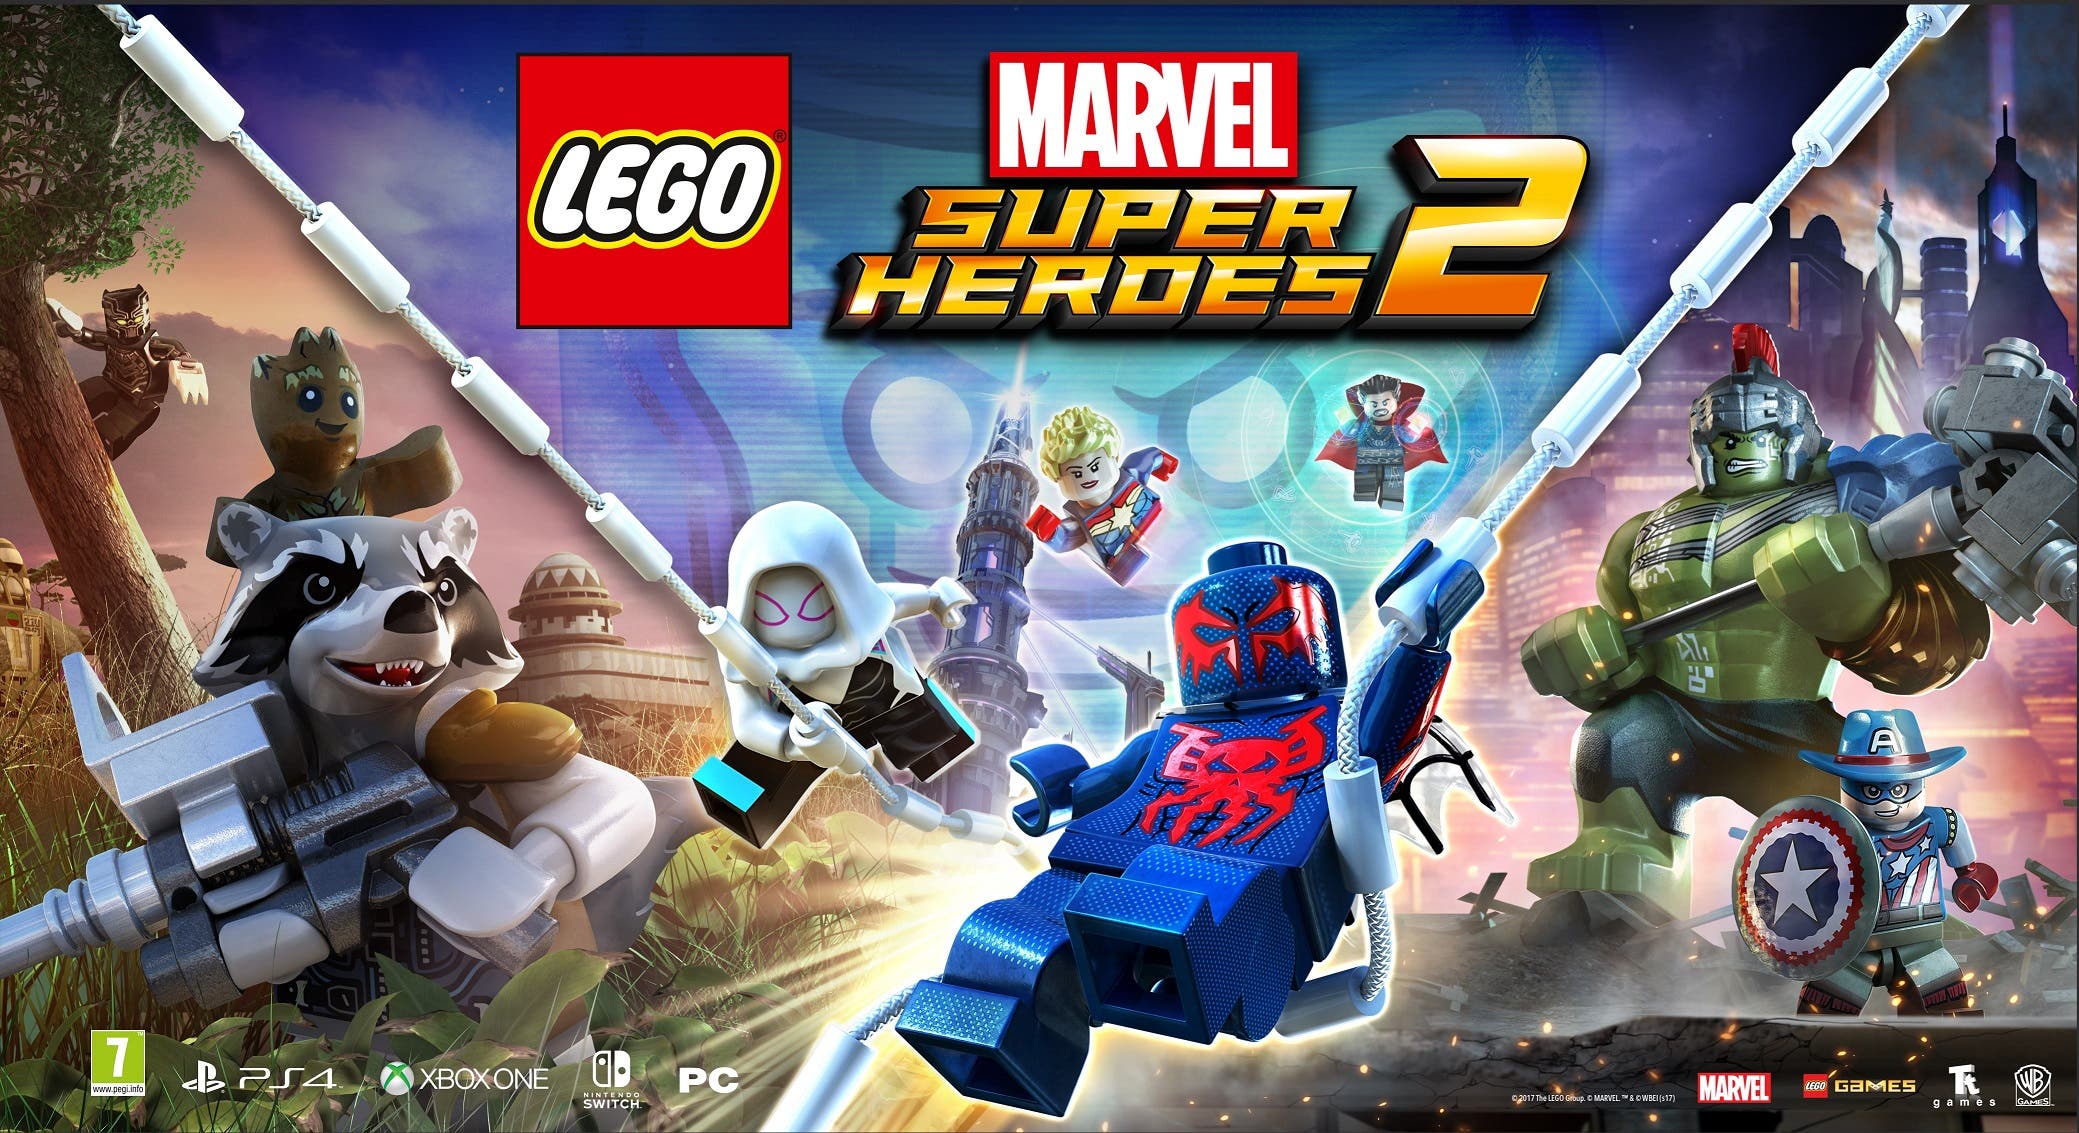 LEGOMarvelSuperheroes2 key